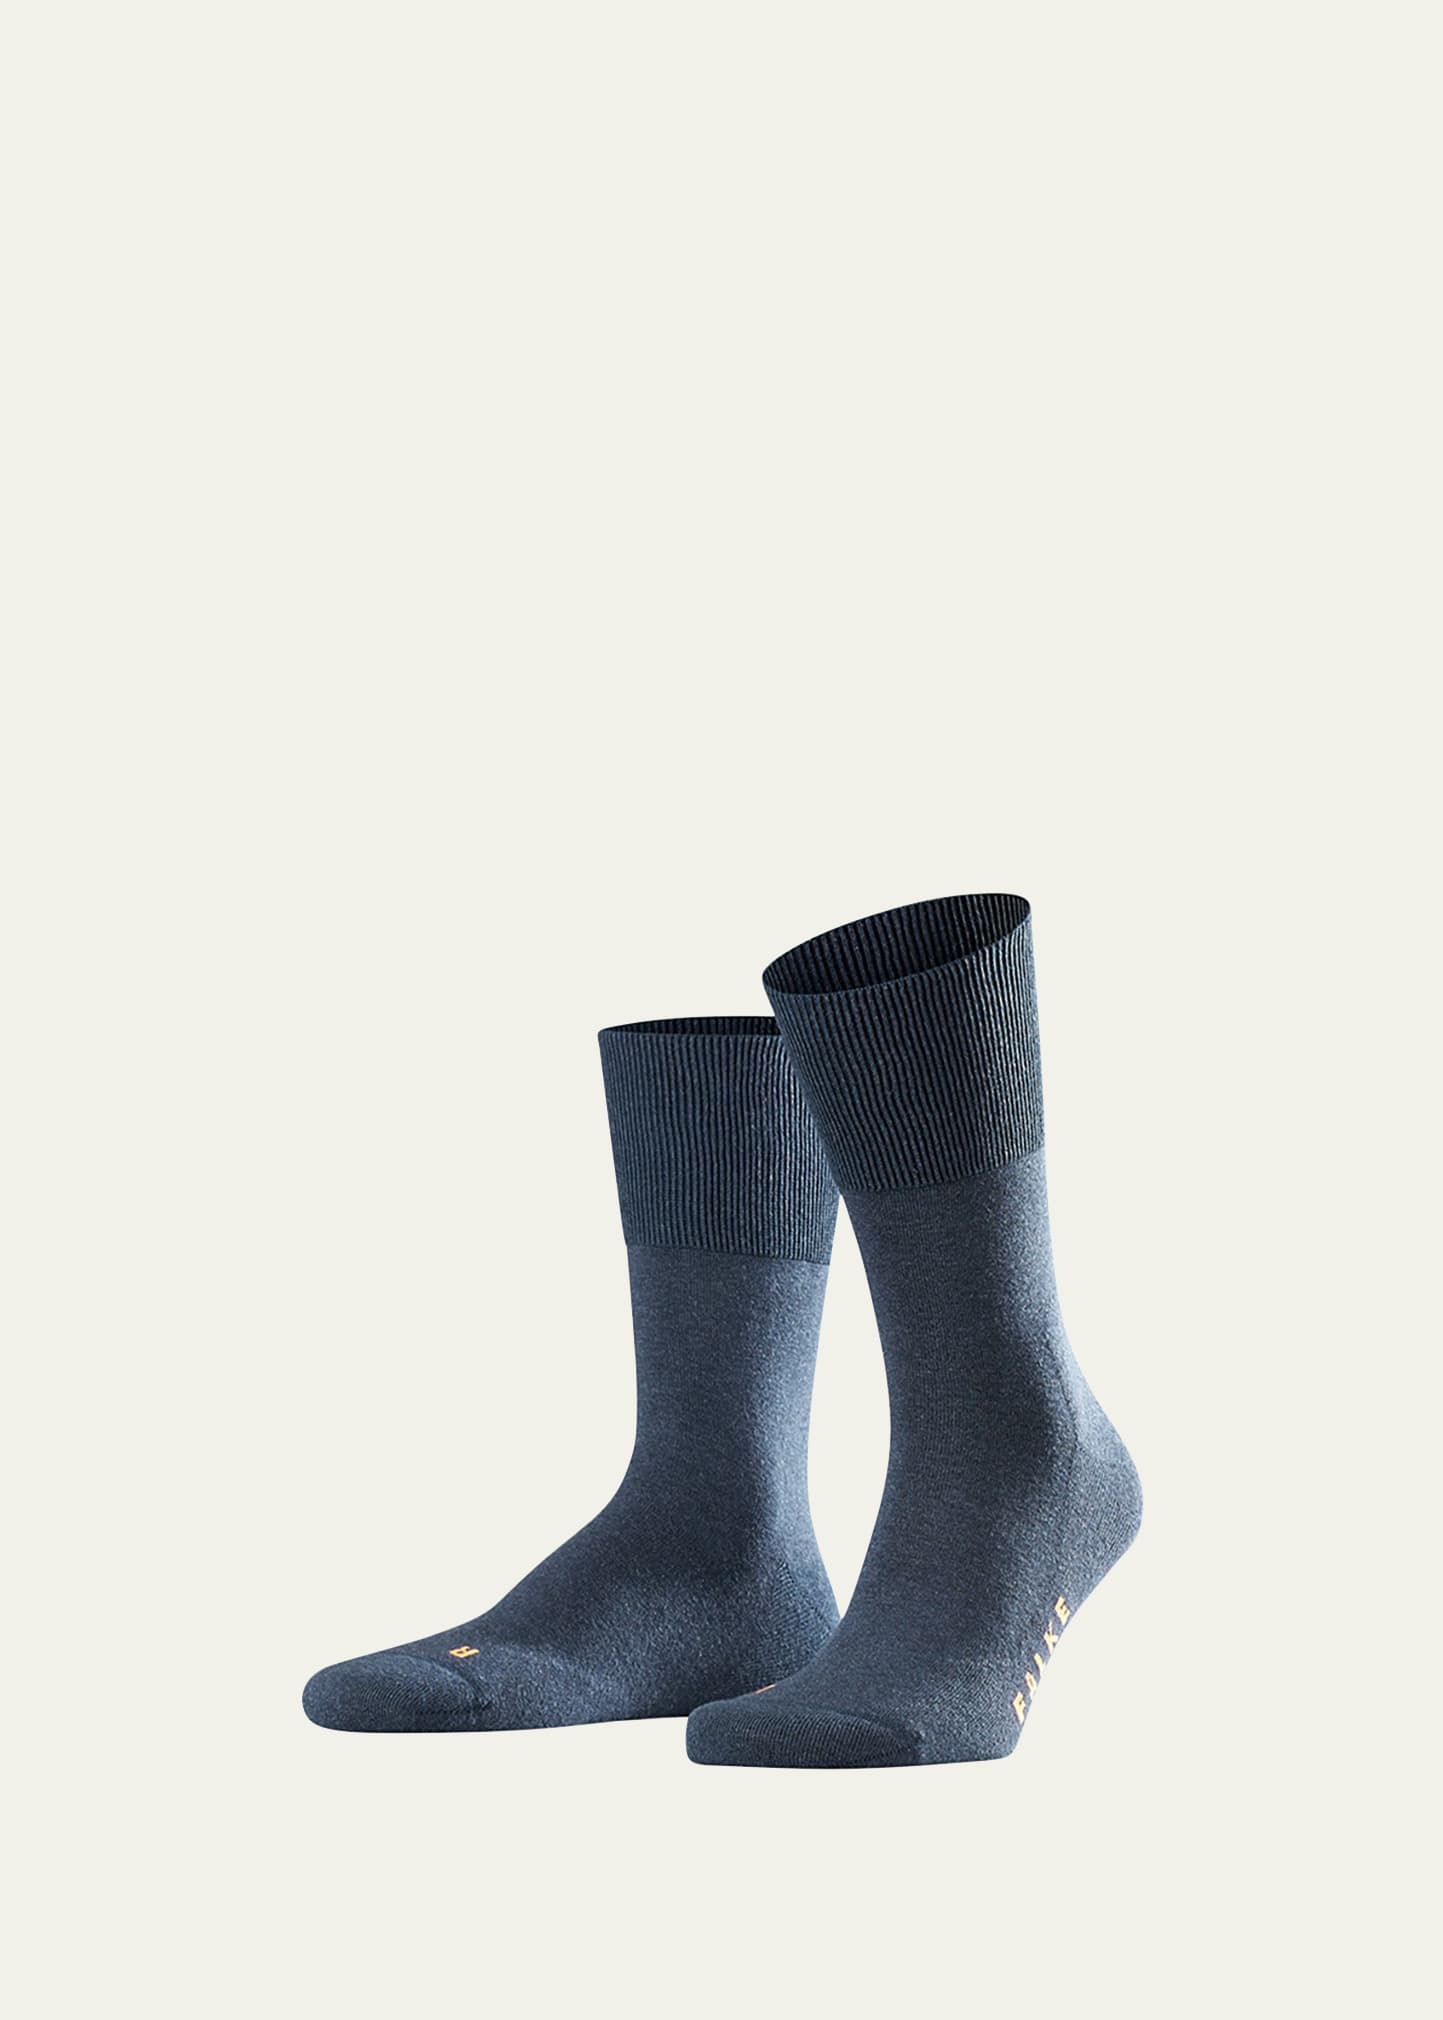 Falke Men's Run Plush-sole Socks In Navy Blue Mel